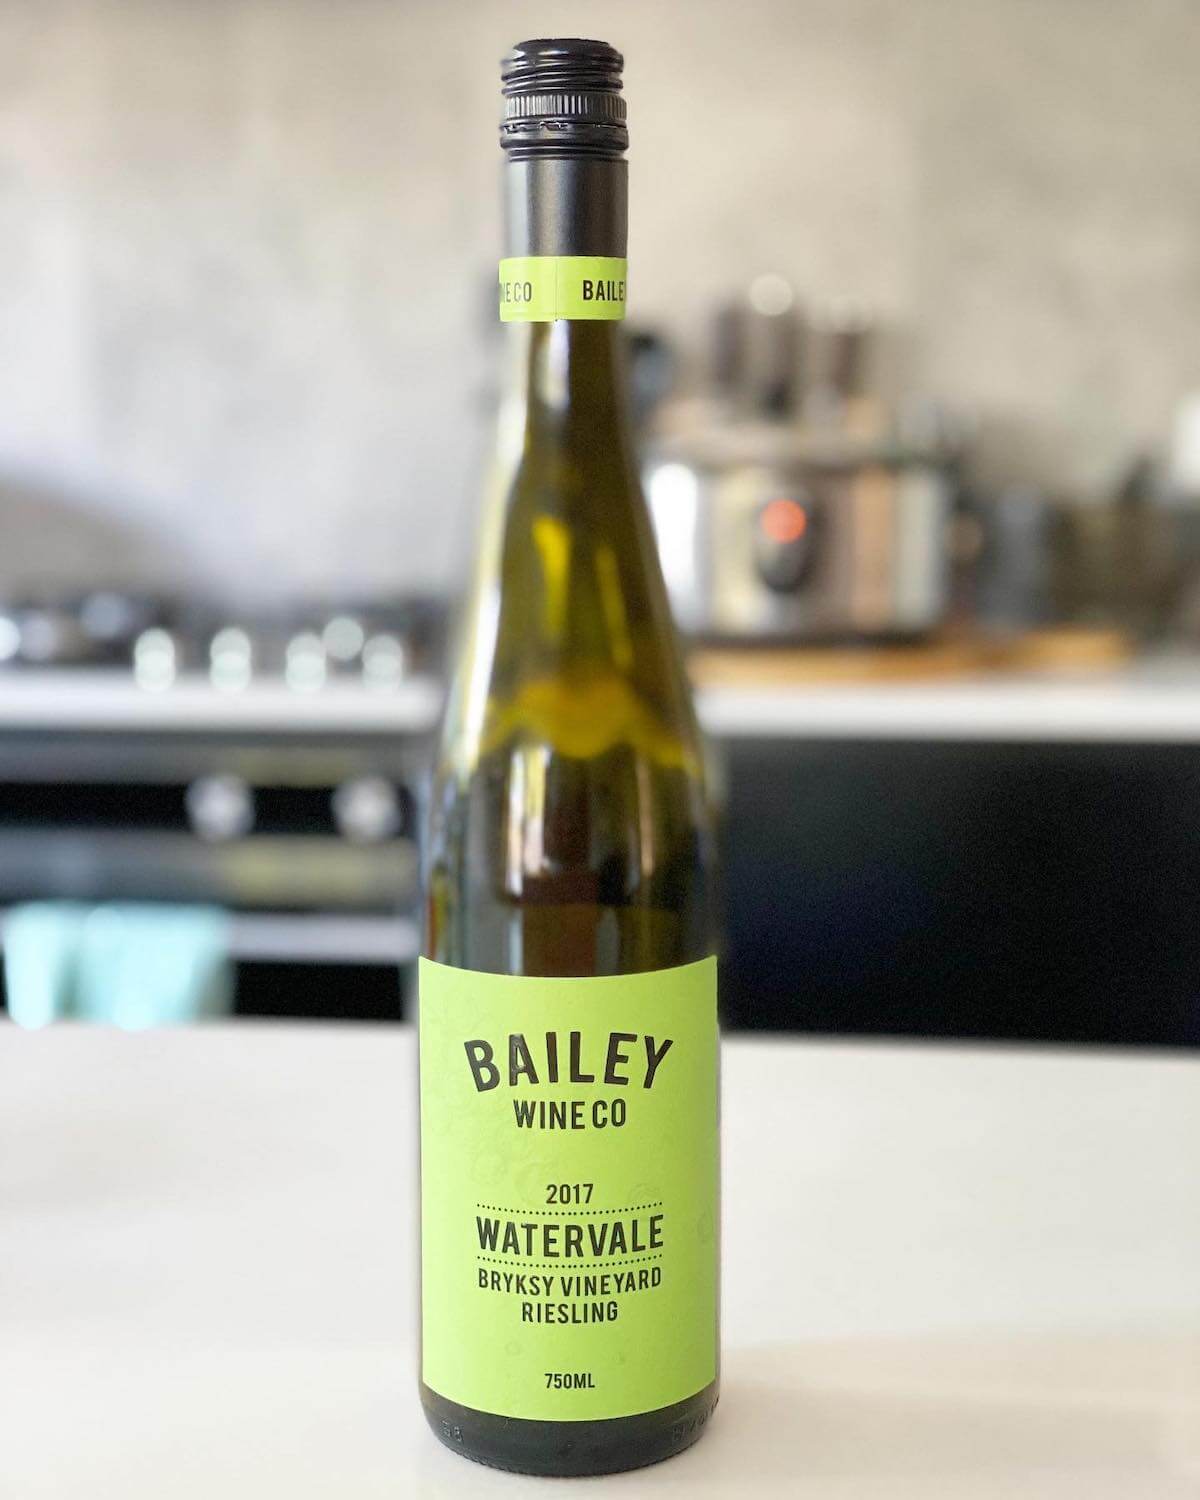 Bailey Wine Co 2017 Watervale Bryksy Vineyard Riesling